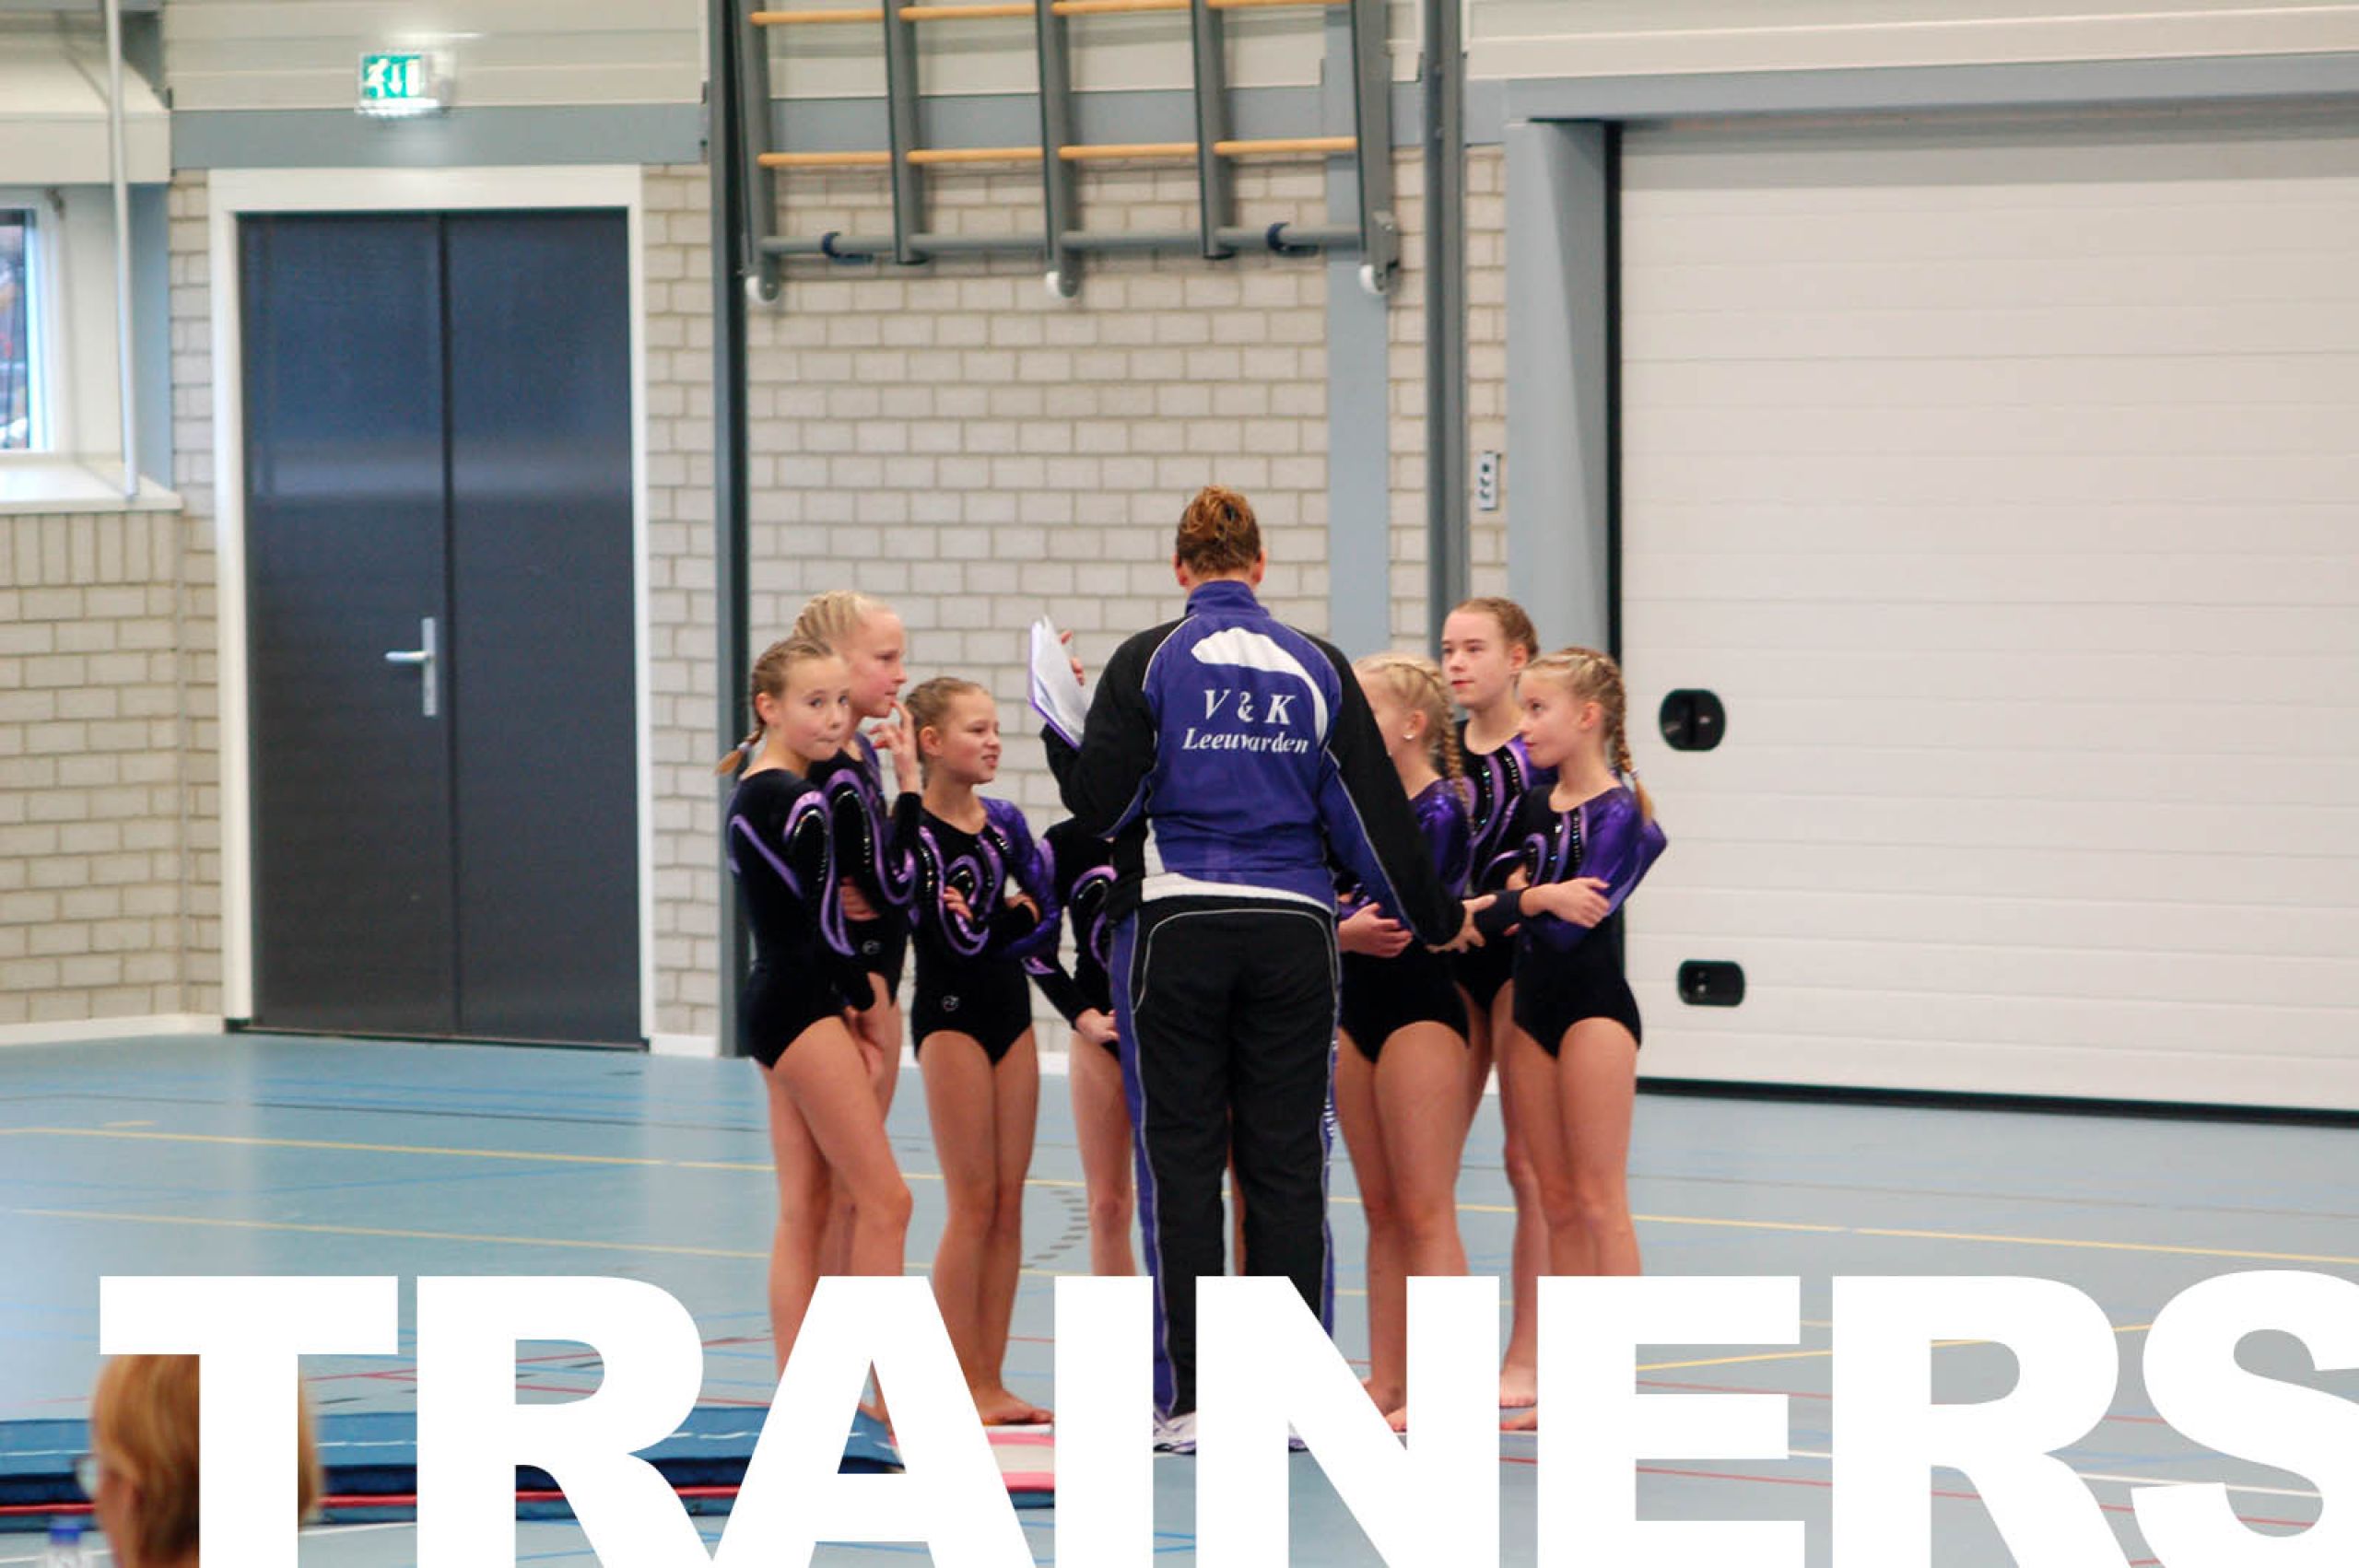 trainers-df0a4f39 Trainers - V en K Leeuwarden